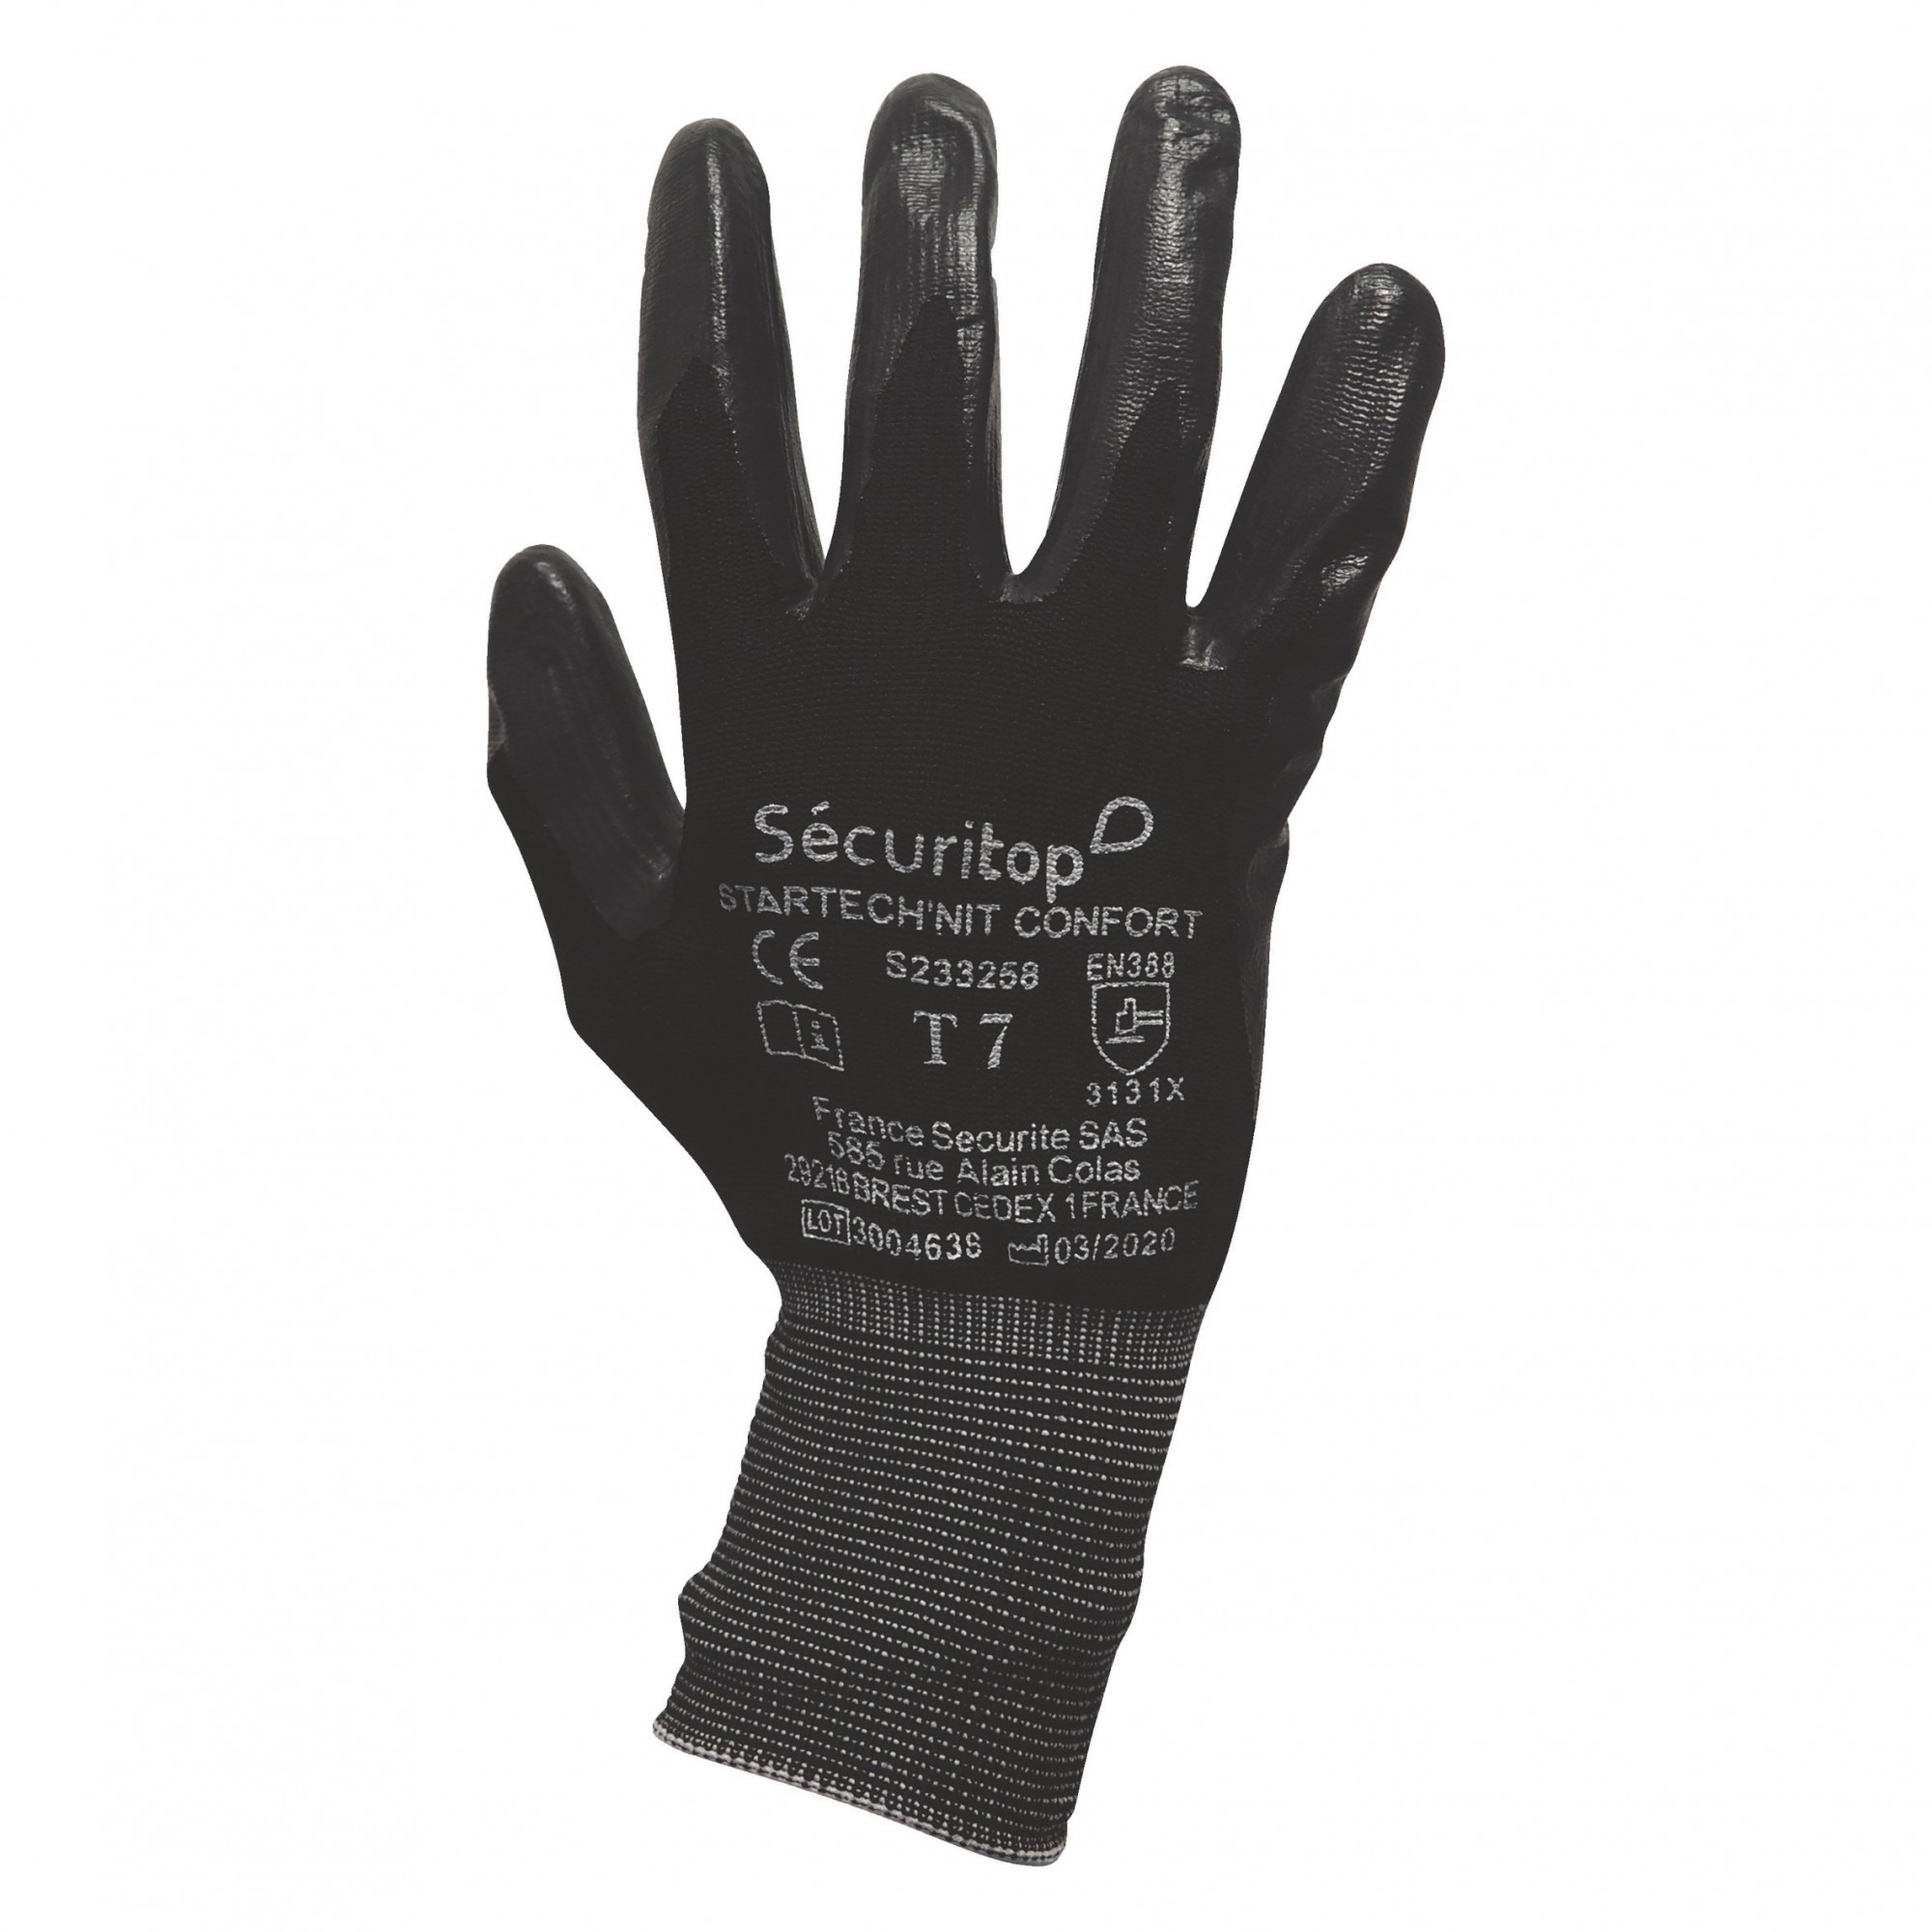 12 Paires de gants de manutention Startech'nit Confort - Sécuritop - SECURITOP